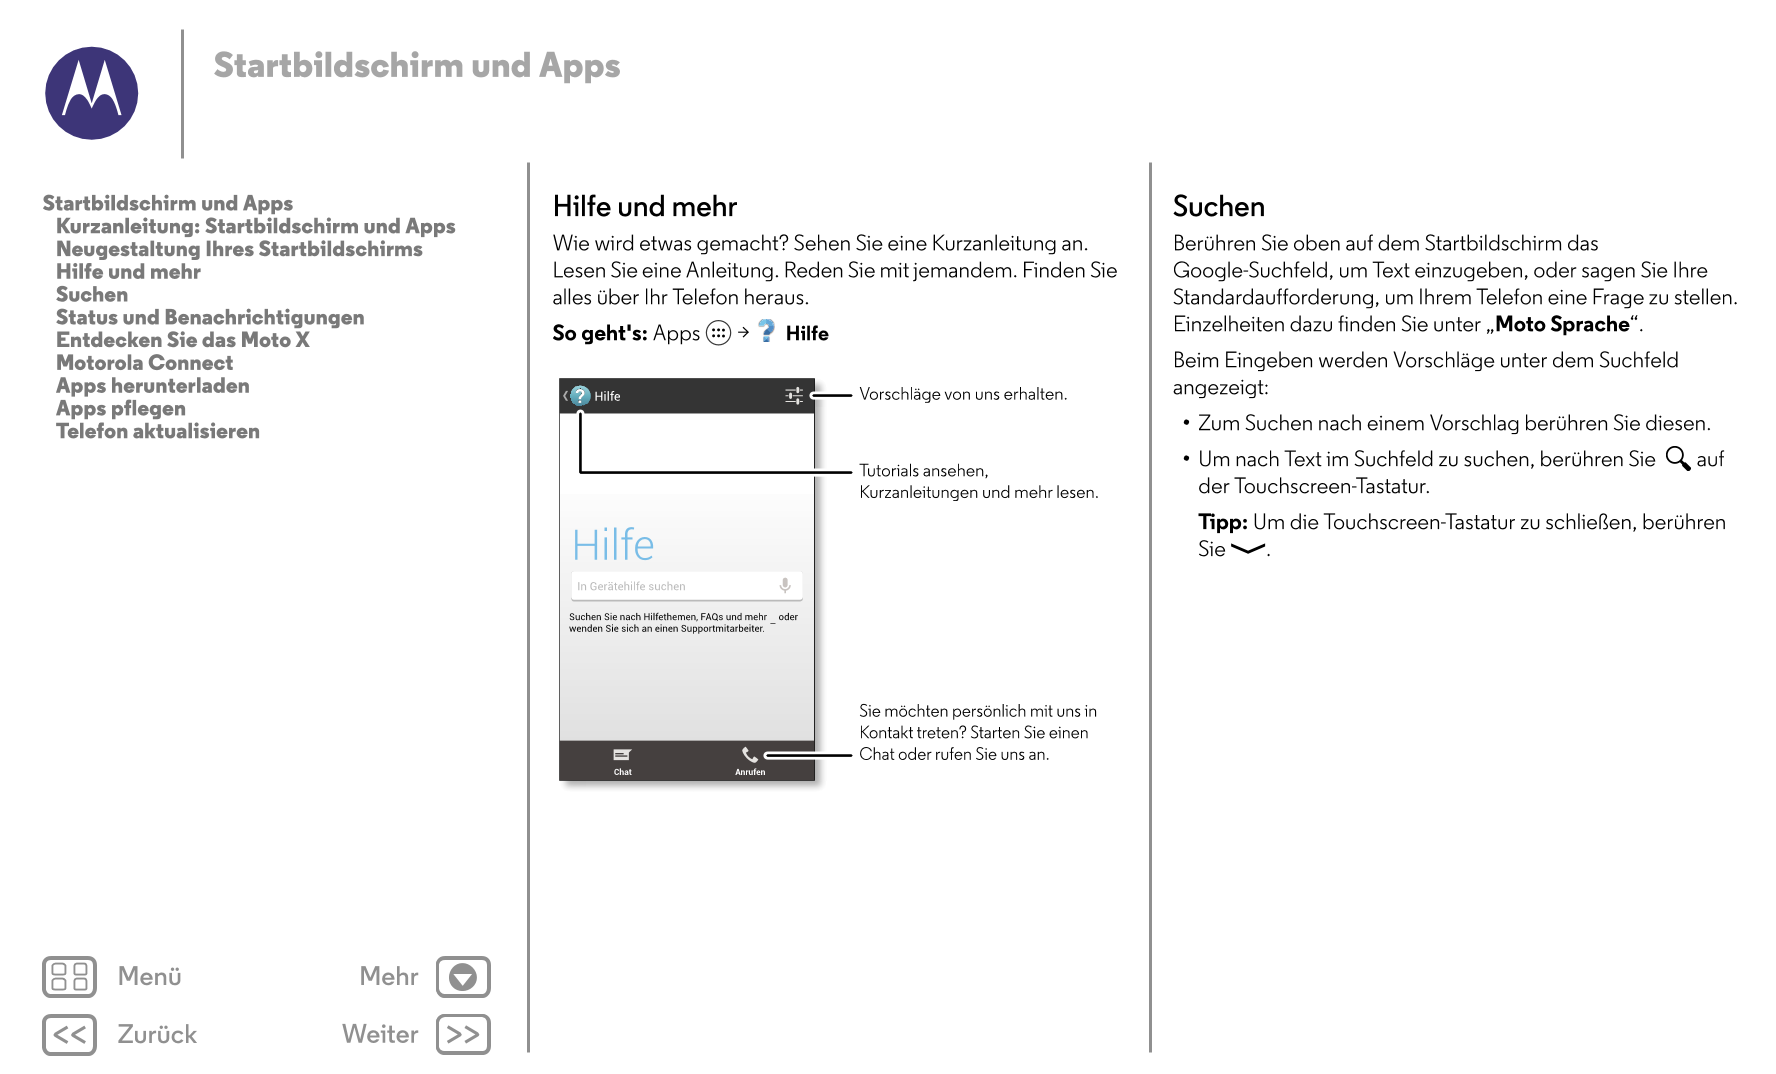 Startbildschirm und Apps
Startbildschirm und Apps Hilfe und mehr Suchen
   Kurzanleitung: Startbildschirm und Apps
   Neugestalt